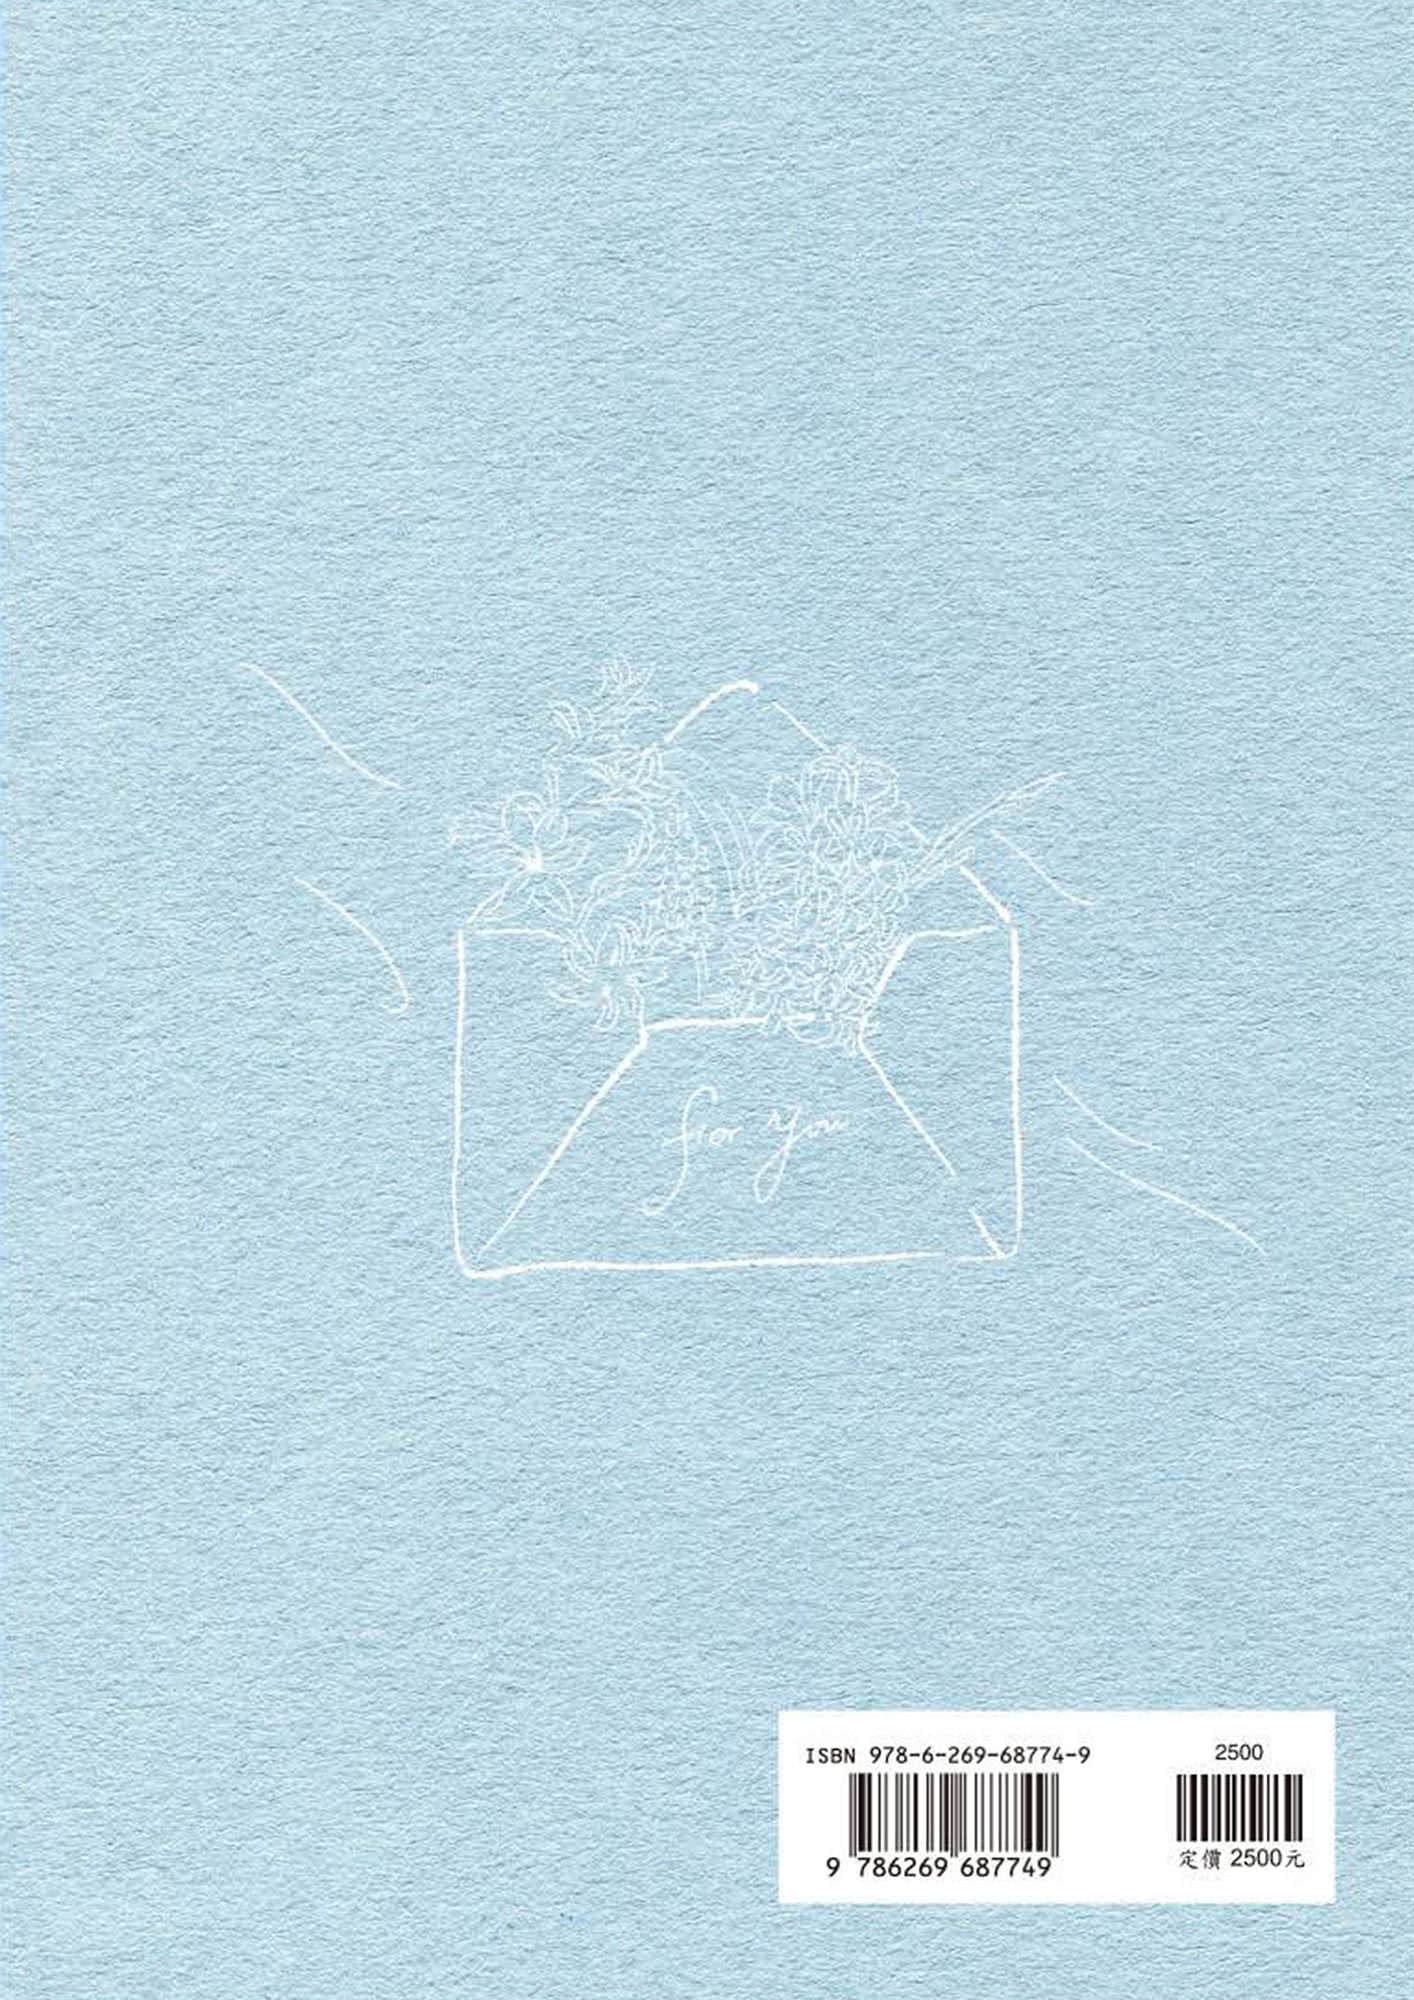 張哲瀚×藍風的信Hyacinth